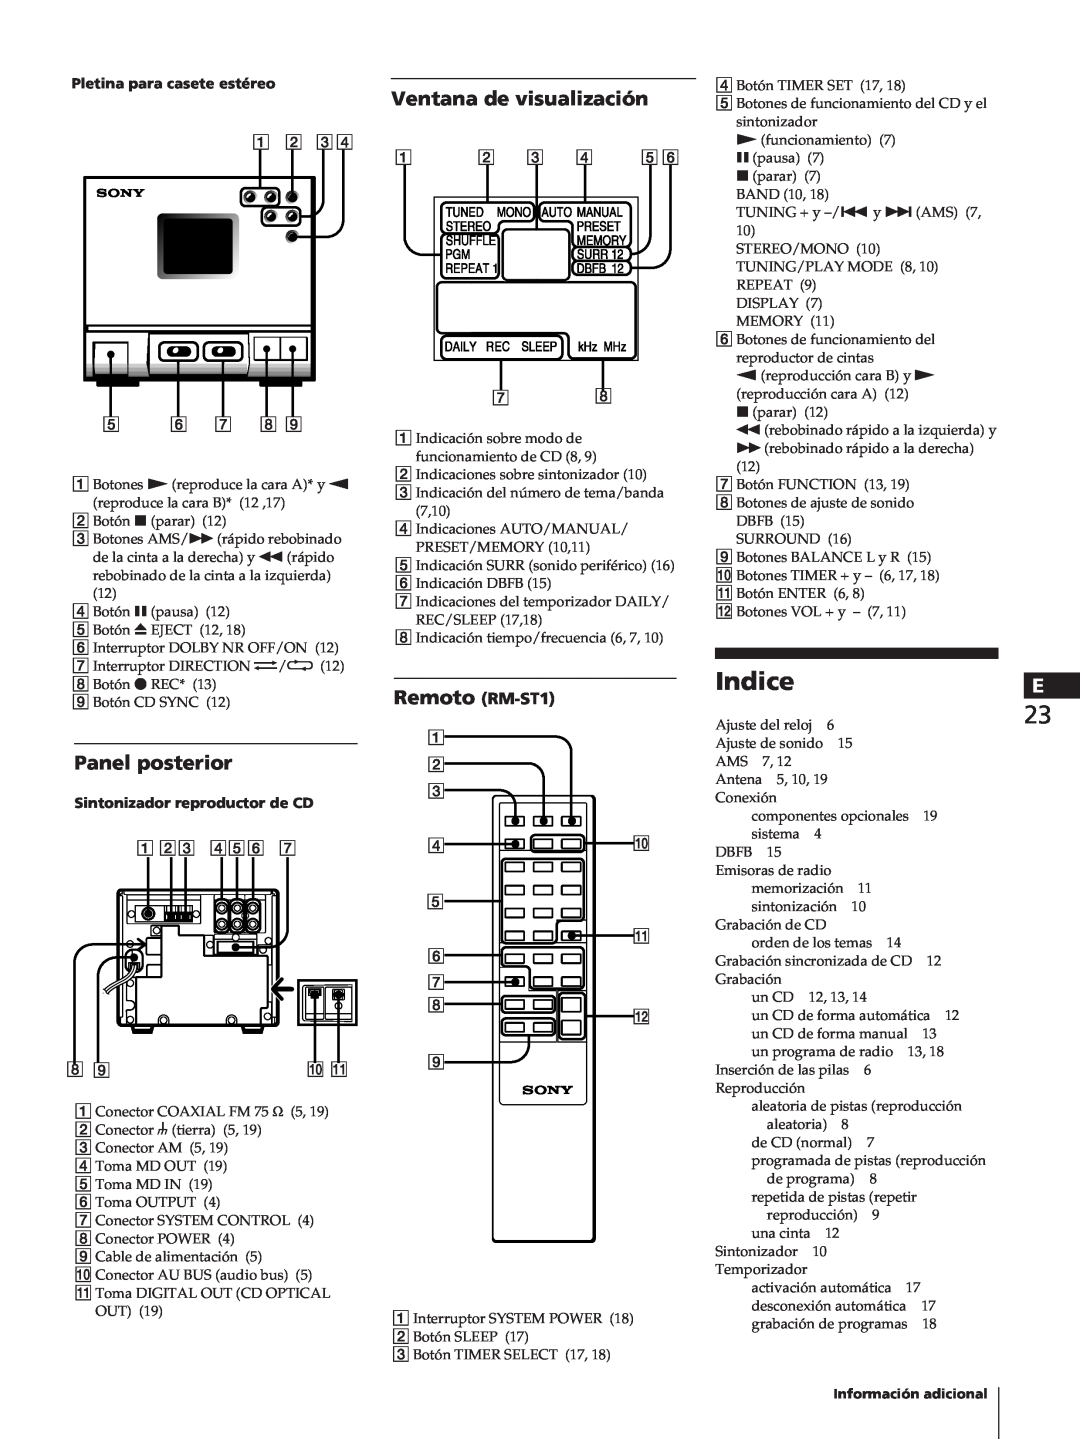 Sony TC-TX1, SA-N11, HCD-T1 manual Ventana de visualización, Panel posterior, Remoto RM-ST1, Pletina para casete estéreo 